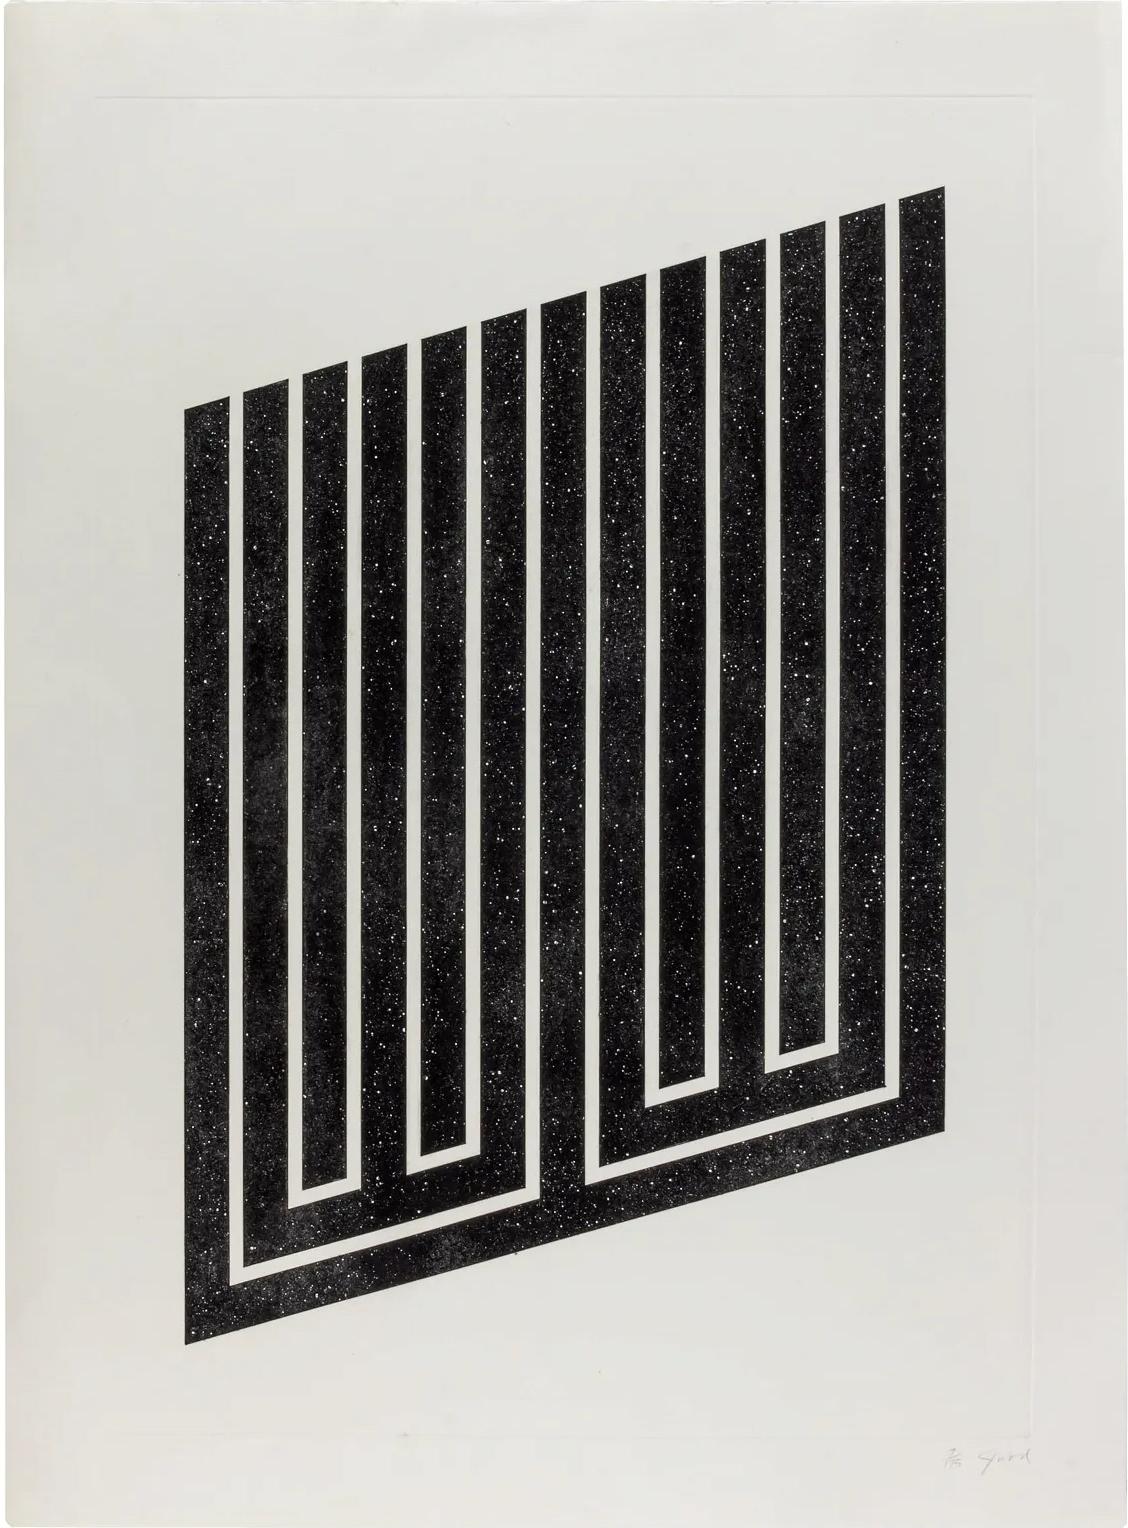 Donald Judd (américain 1928-1994)
Sans titre, 1978-79.
Aquatinte sur papier gravure
Signée et numérotée 8/175 au crayon (il y avait aussi 15 épreuves d'artiste).
Publié par l'artiste, avec le cachet de l'imprimeur, Styria Studio, New York.
Avec